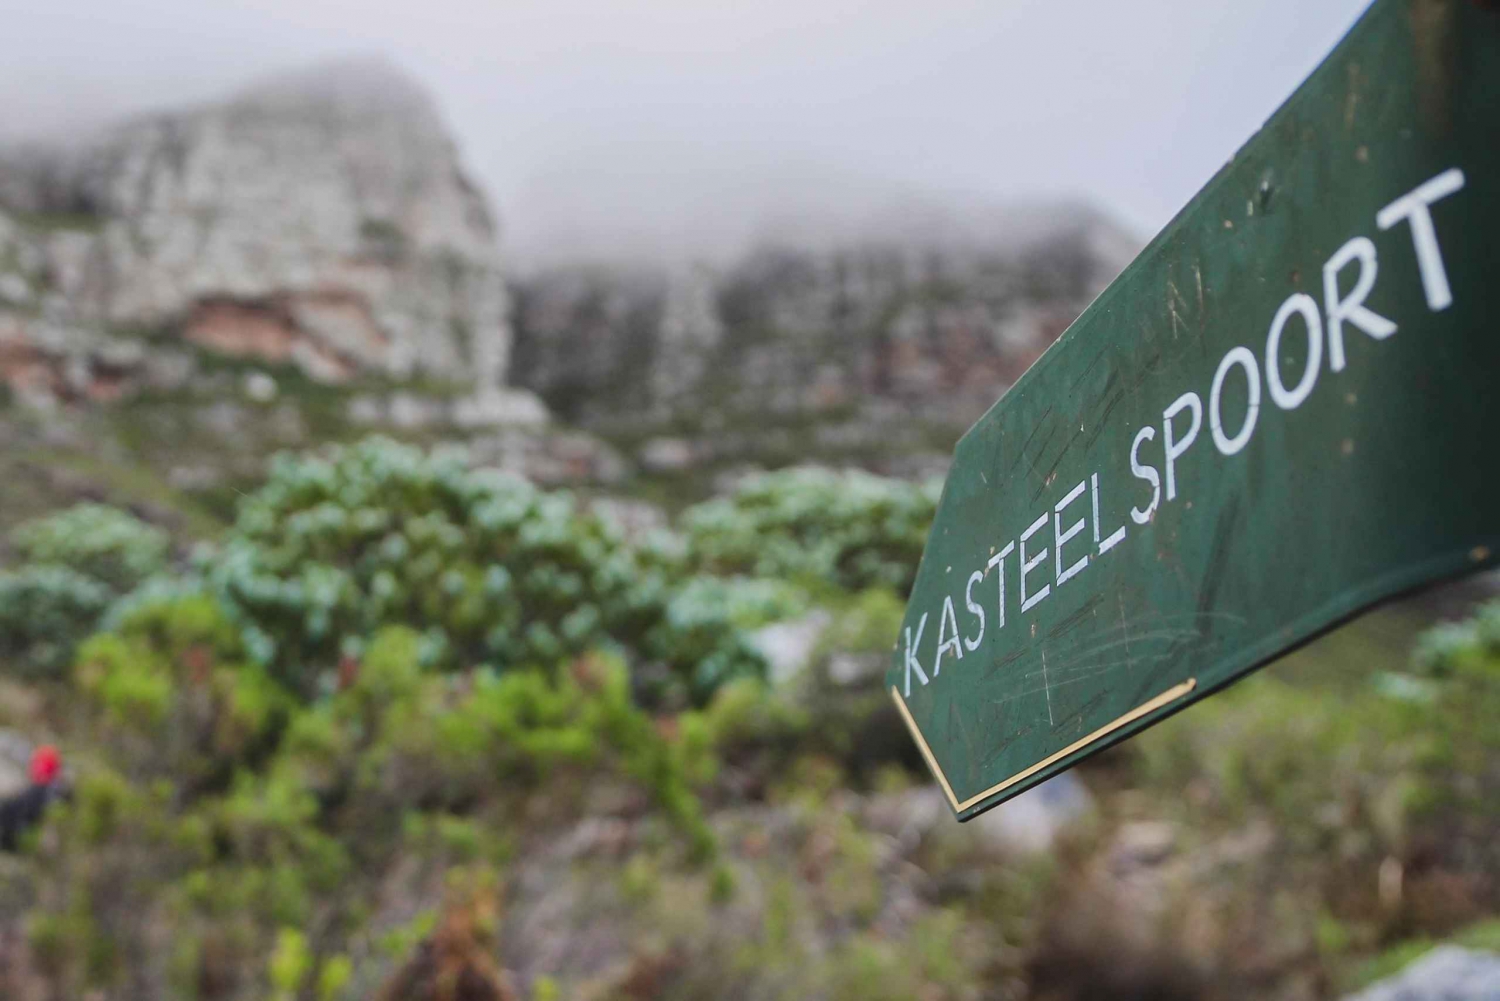 Table Mountain: Da Kasteelspoort alla stazione superiore della funivia.